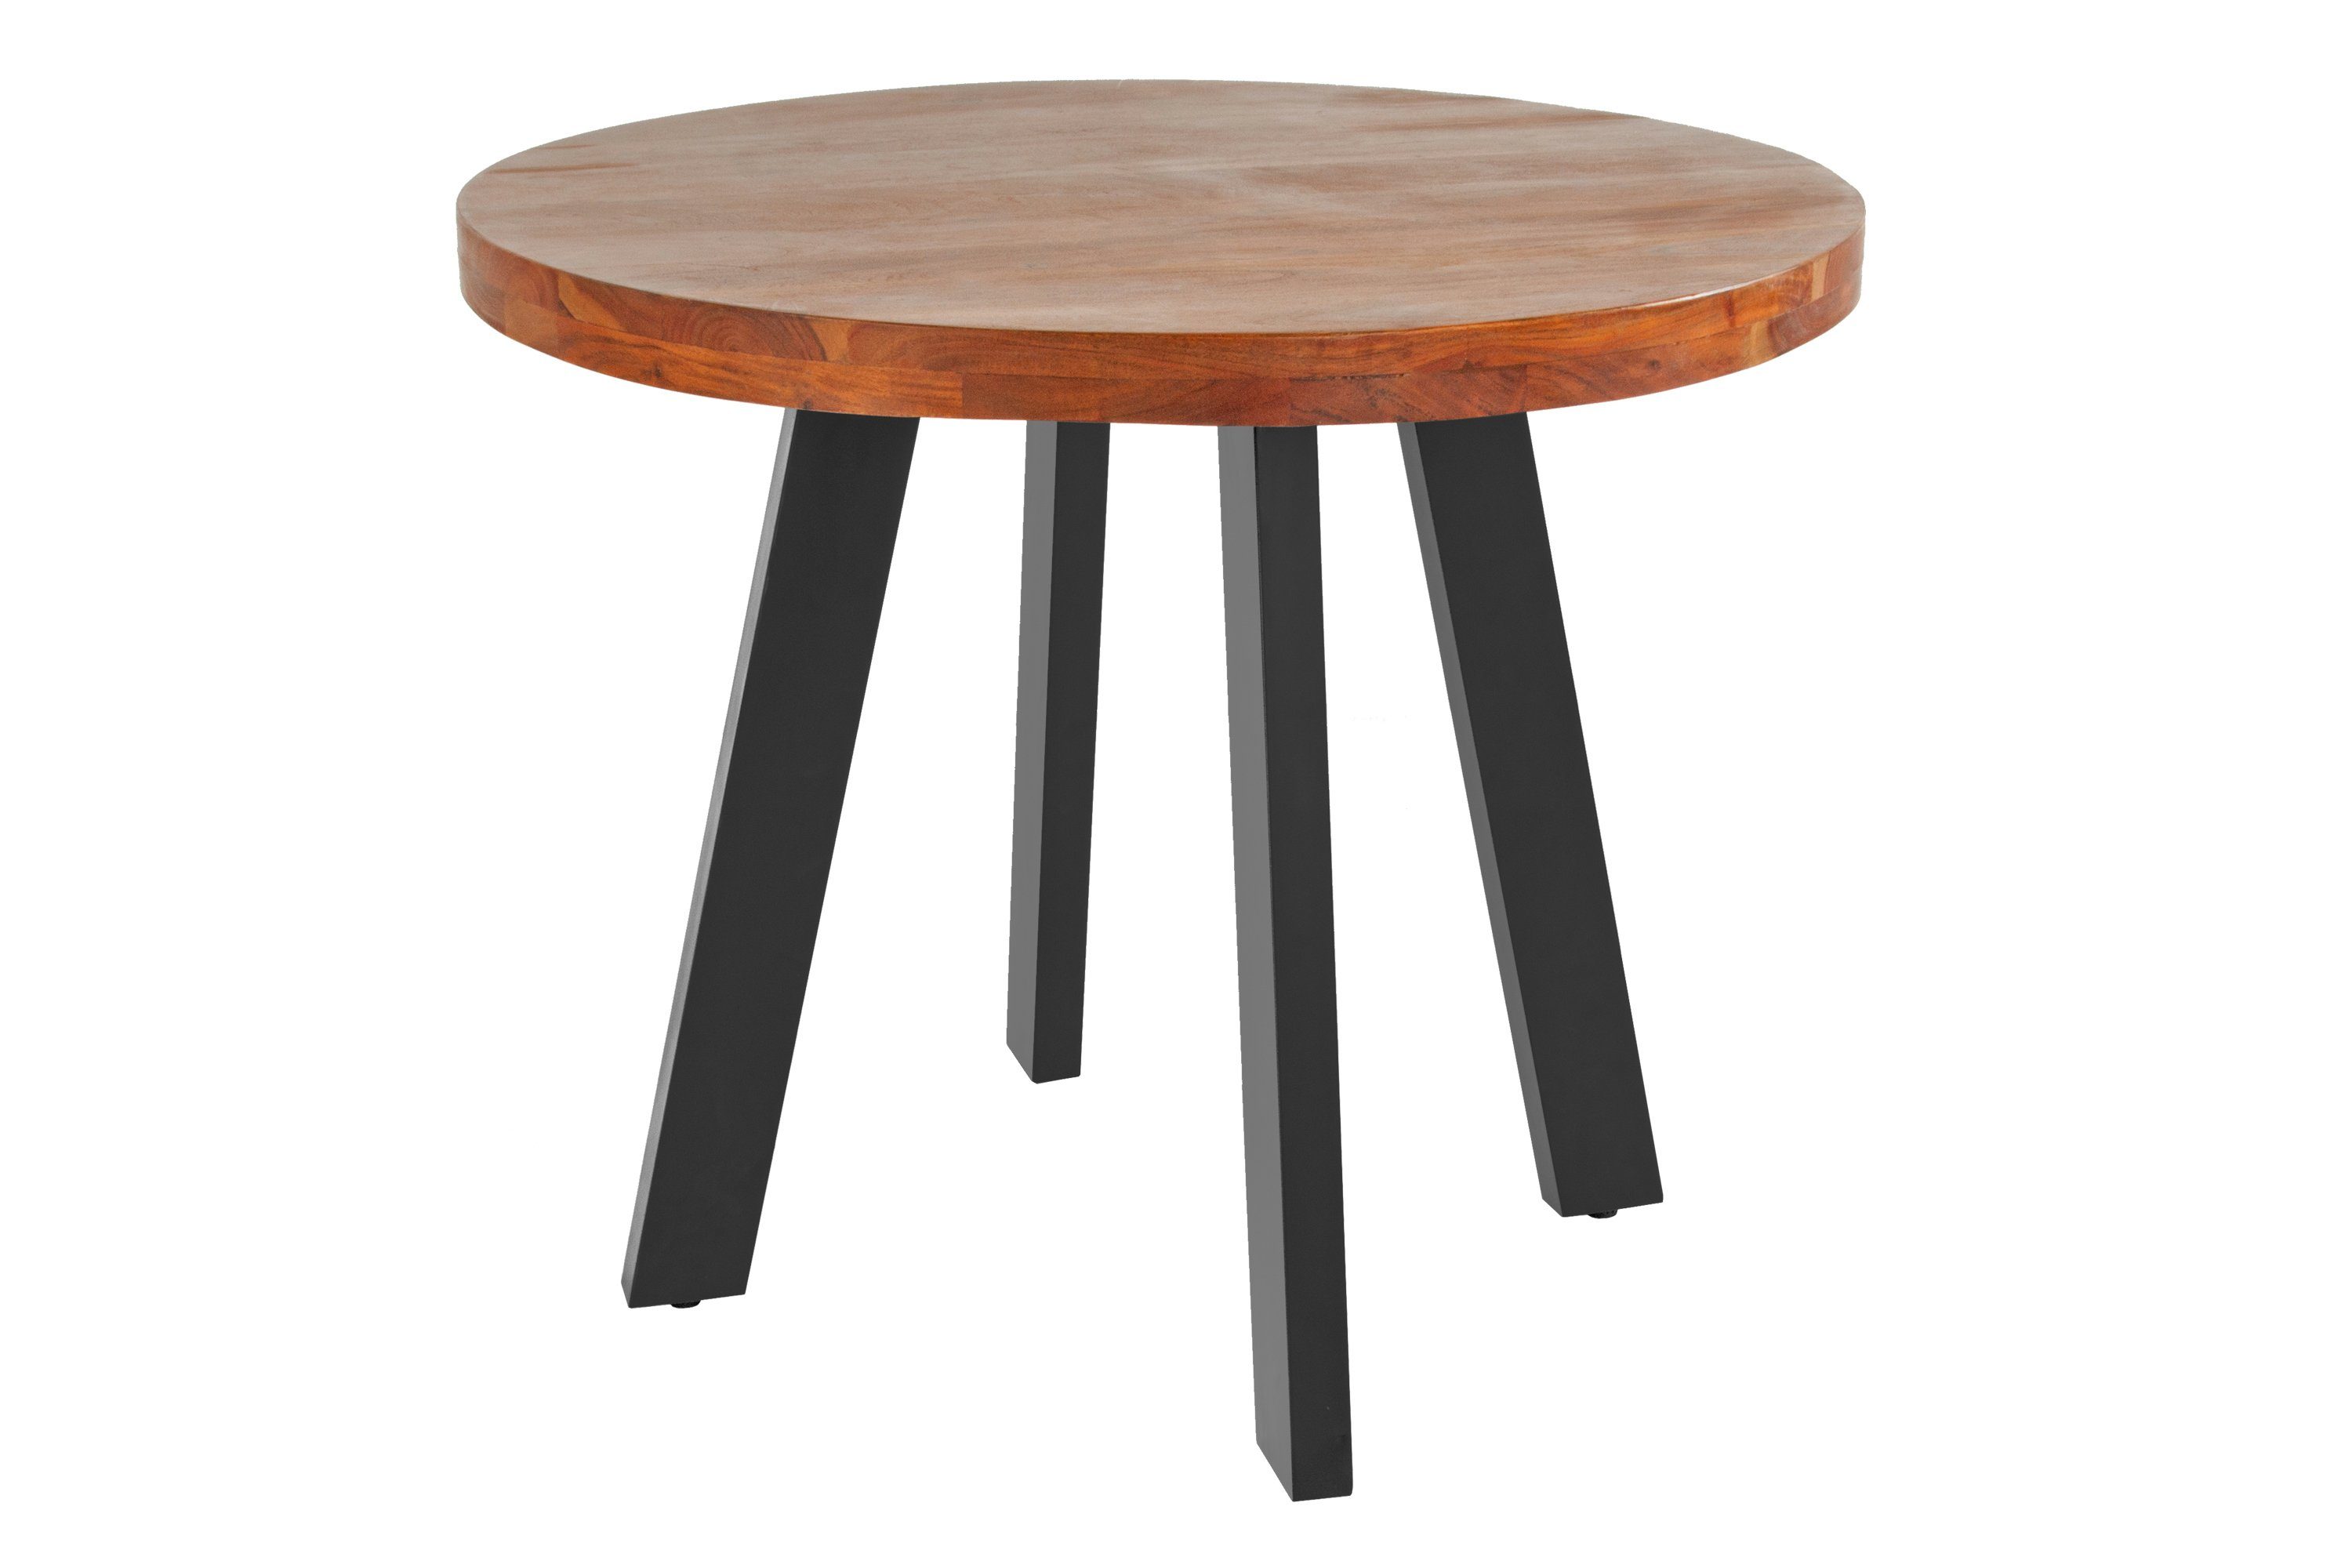 SAM® Esstisch Samira, Akazienholz, runde Tischplatte, 4-Fußgestell aus Metall nussbaum | schwarz